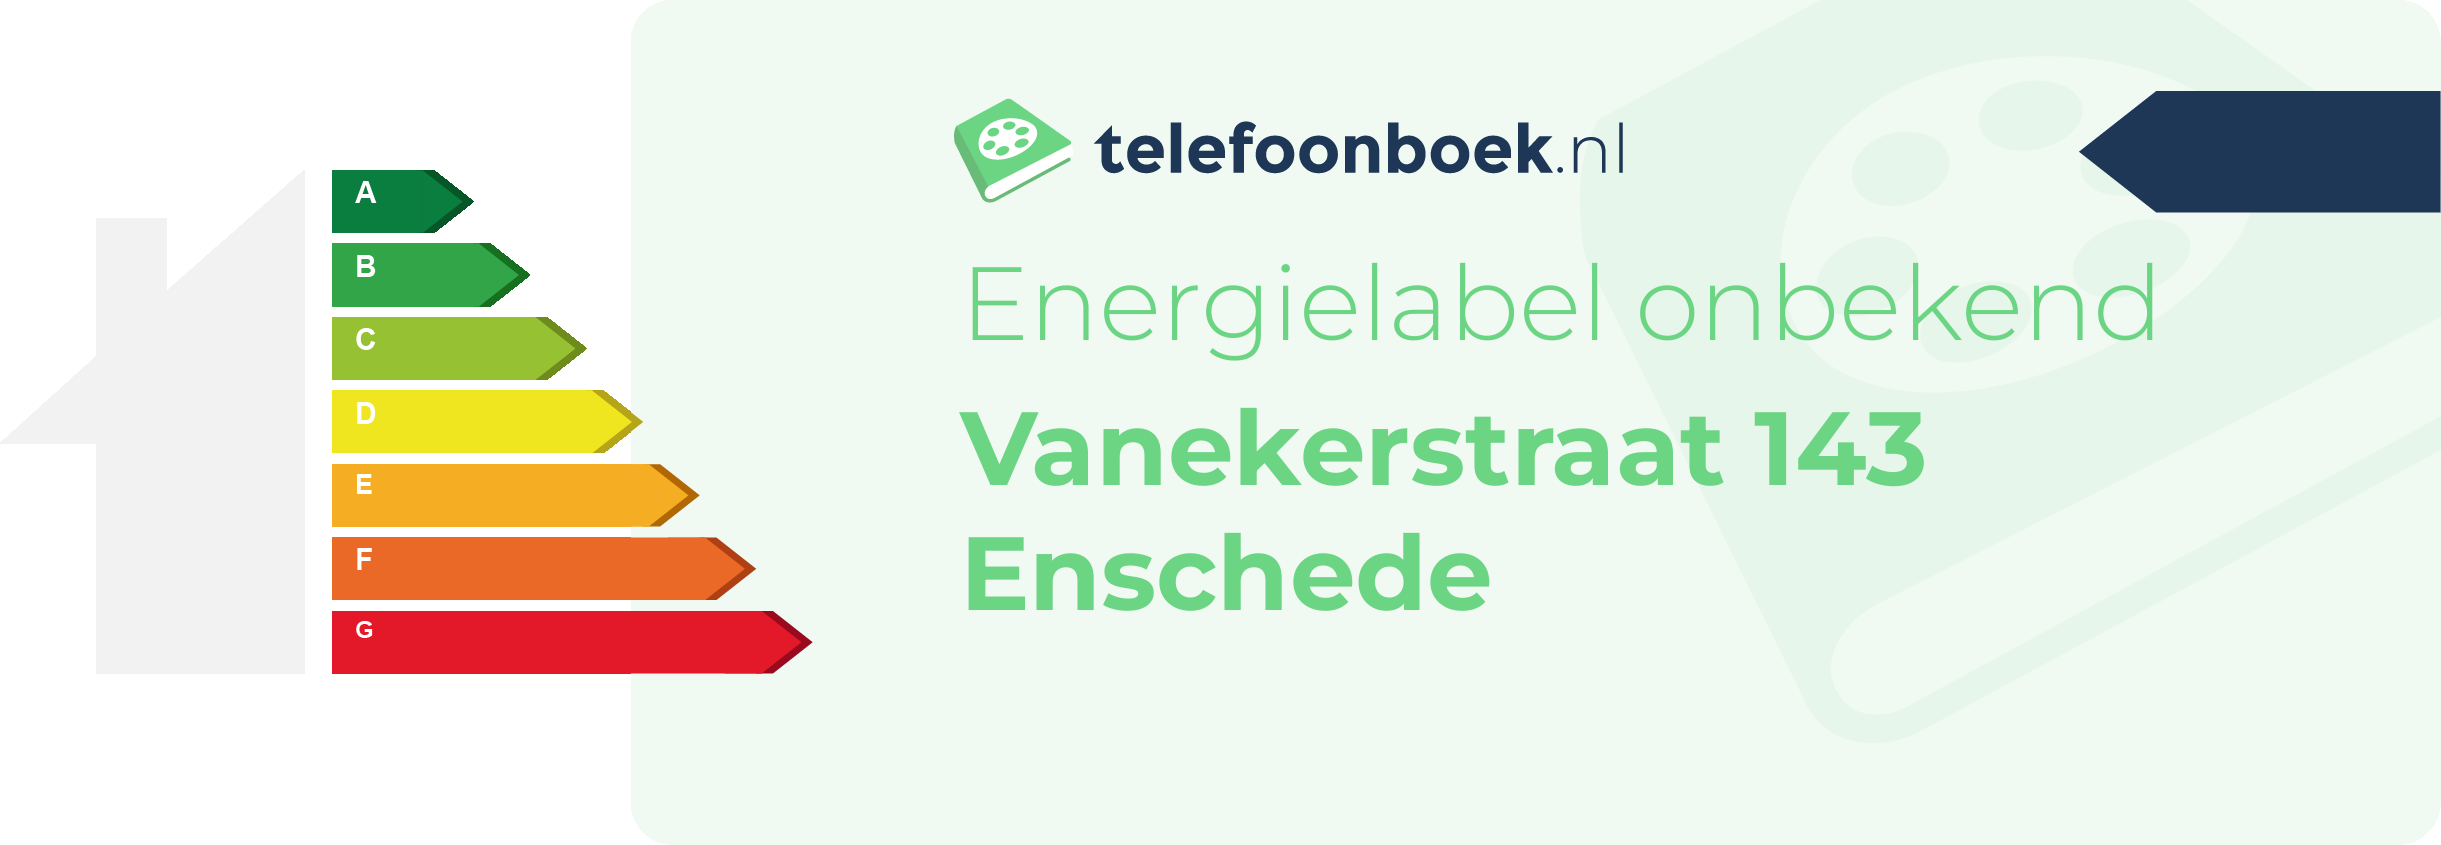 Energielabel Vanekerstraat 143 Enschede